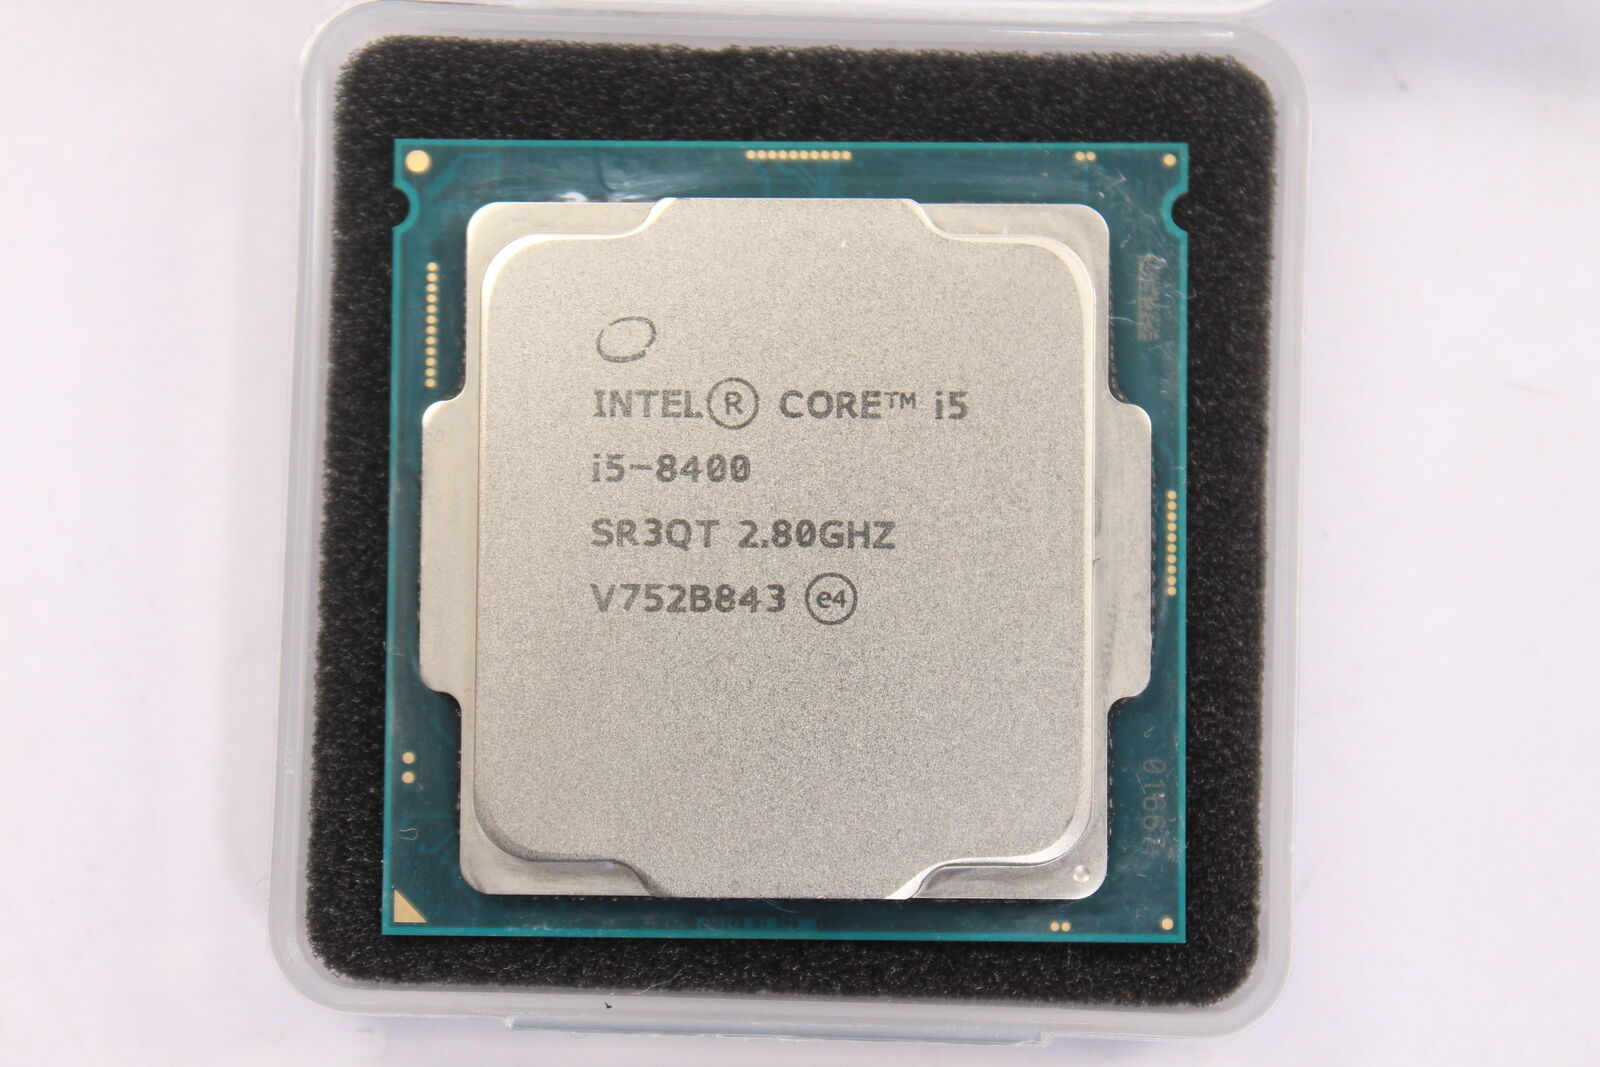 INTEL CORE I5-8400 PROCESSOR | 2.80GHZ | SR3QT